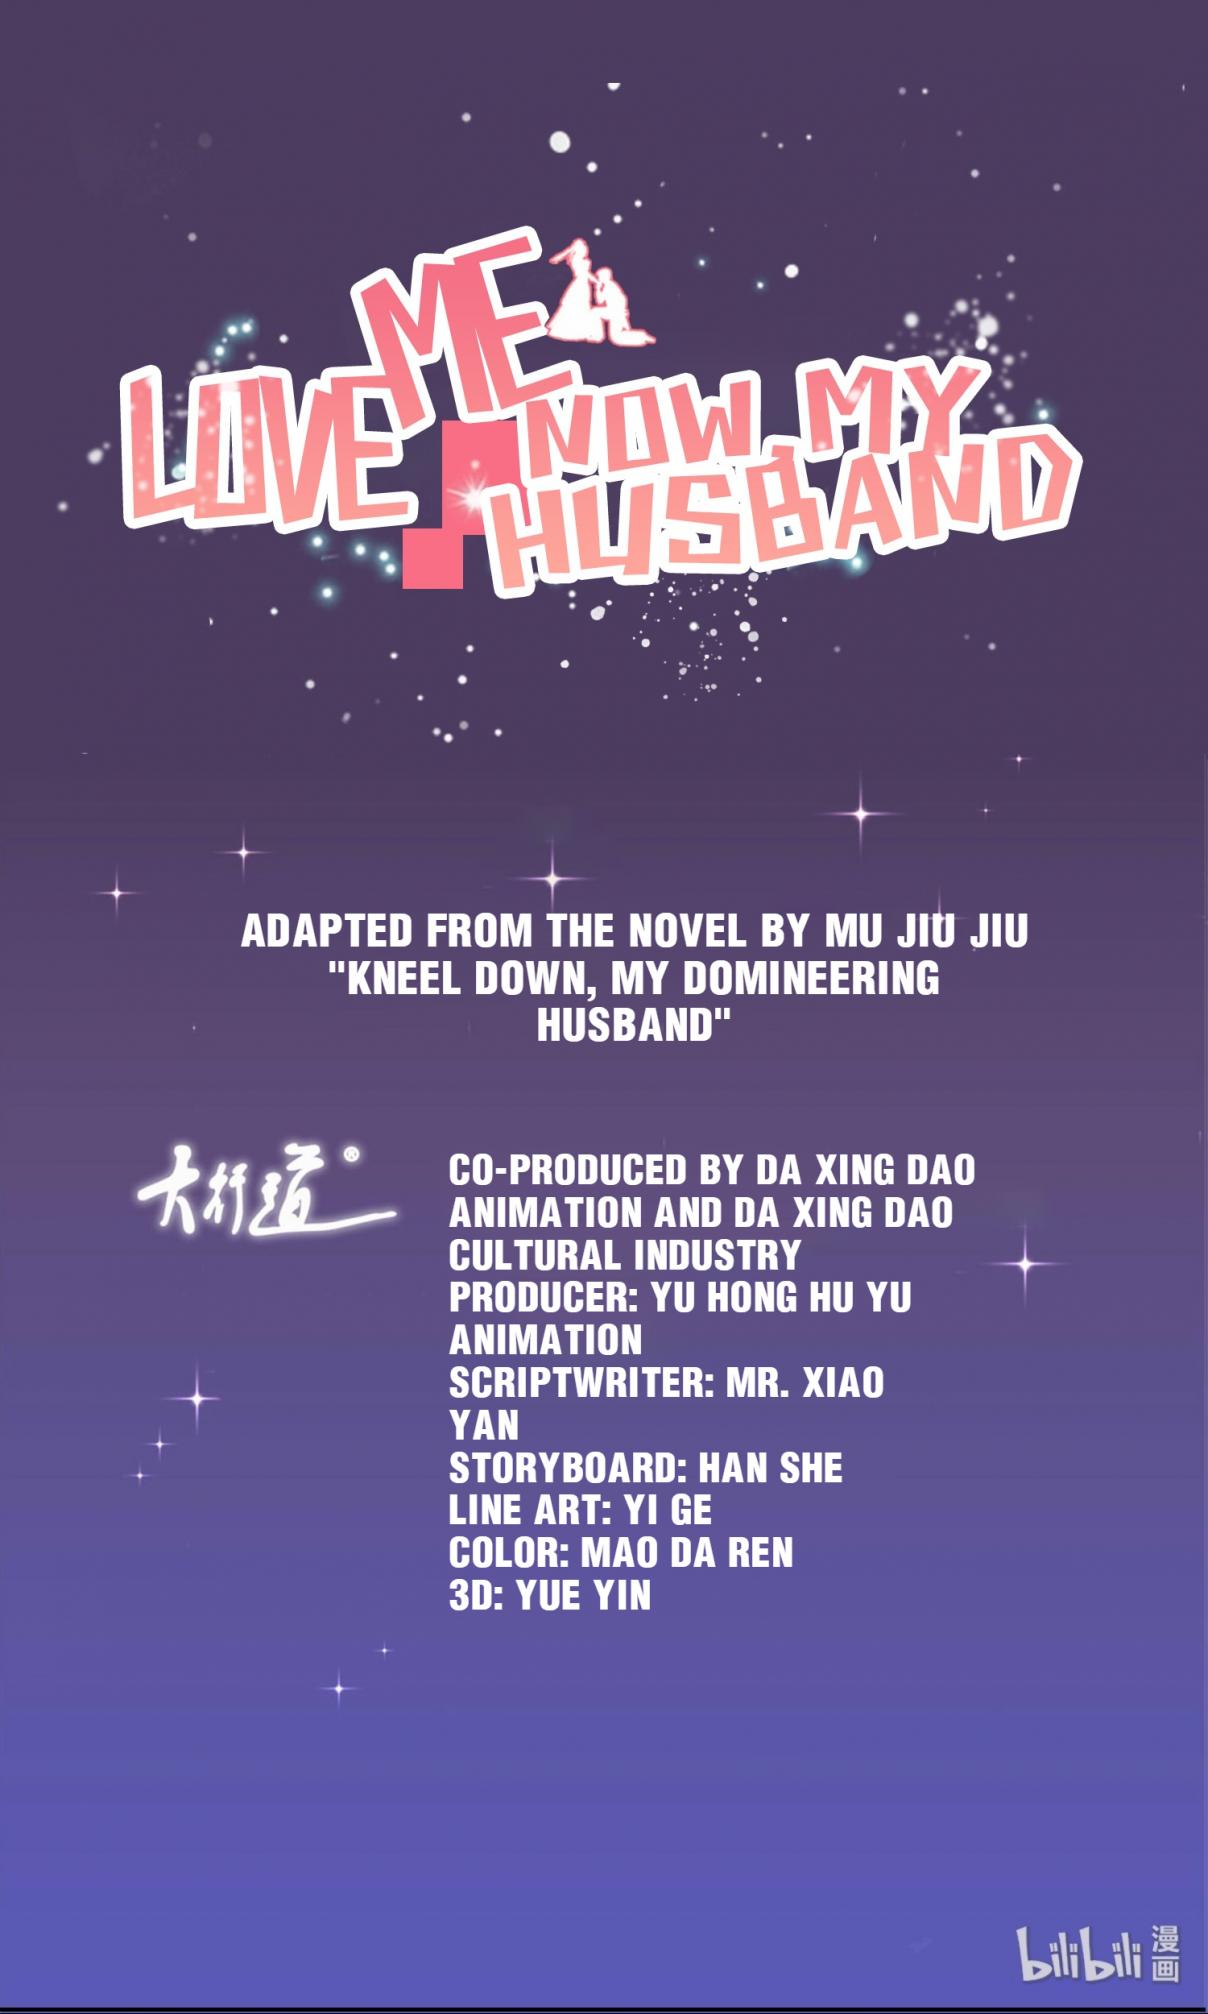 Love Me Now, My Husband 7 XiaoAi Got Taken Away